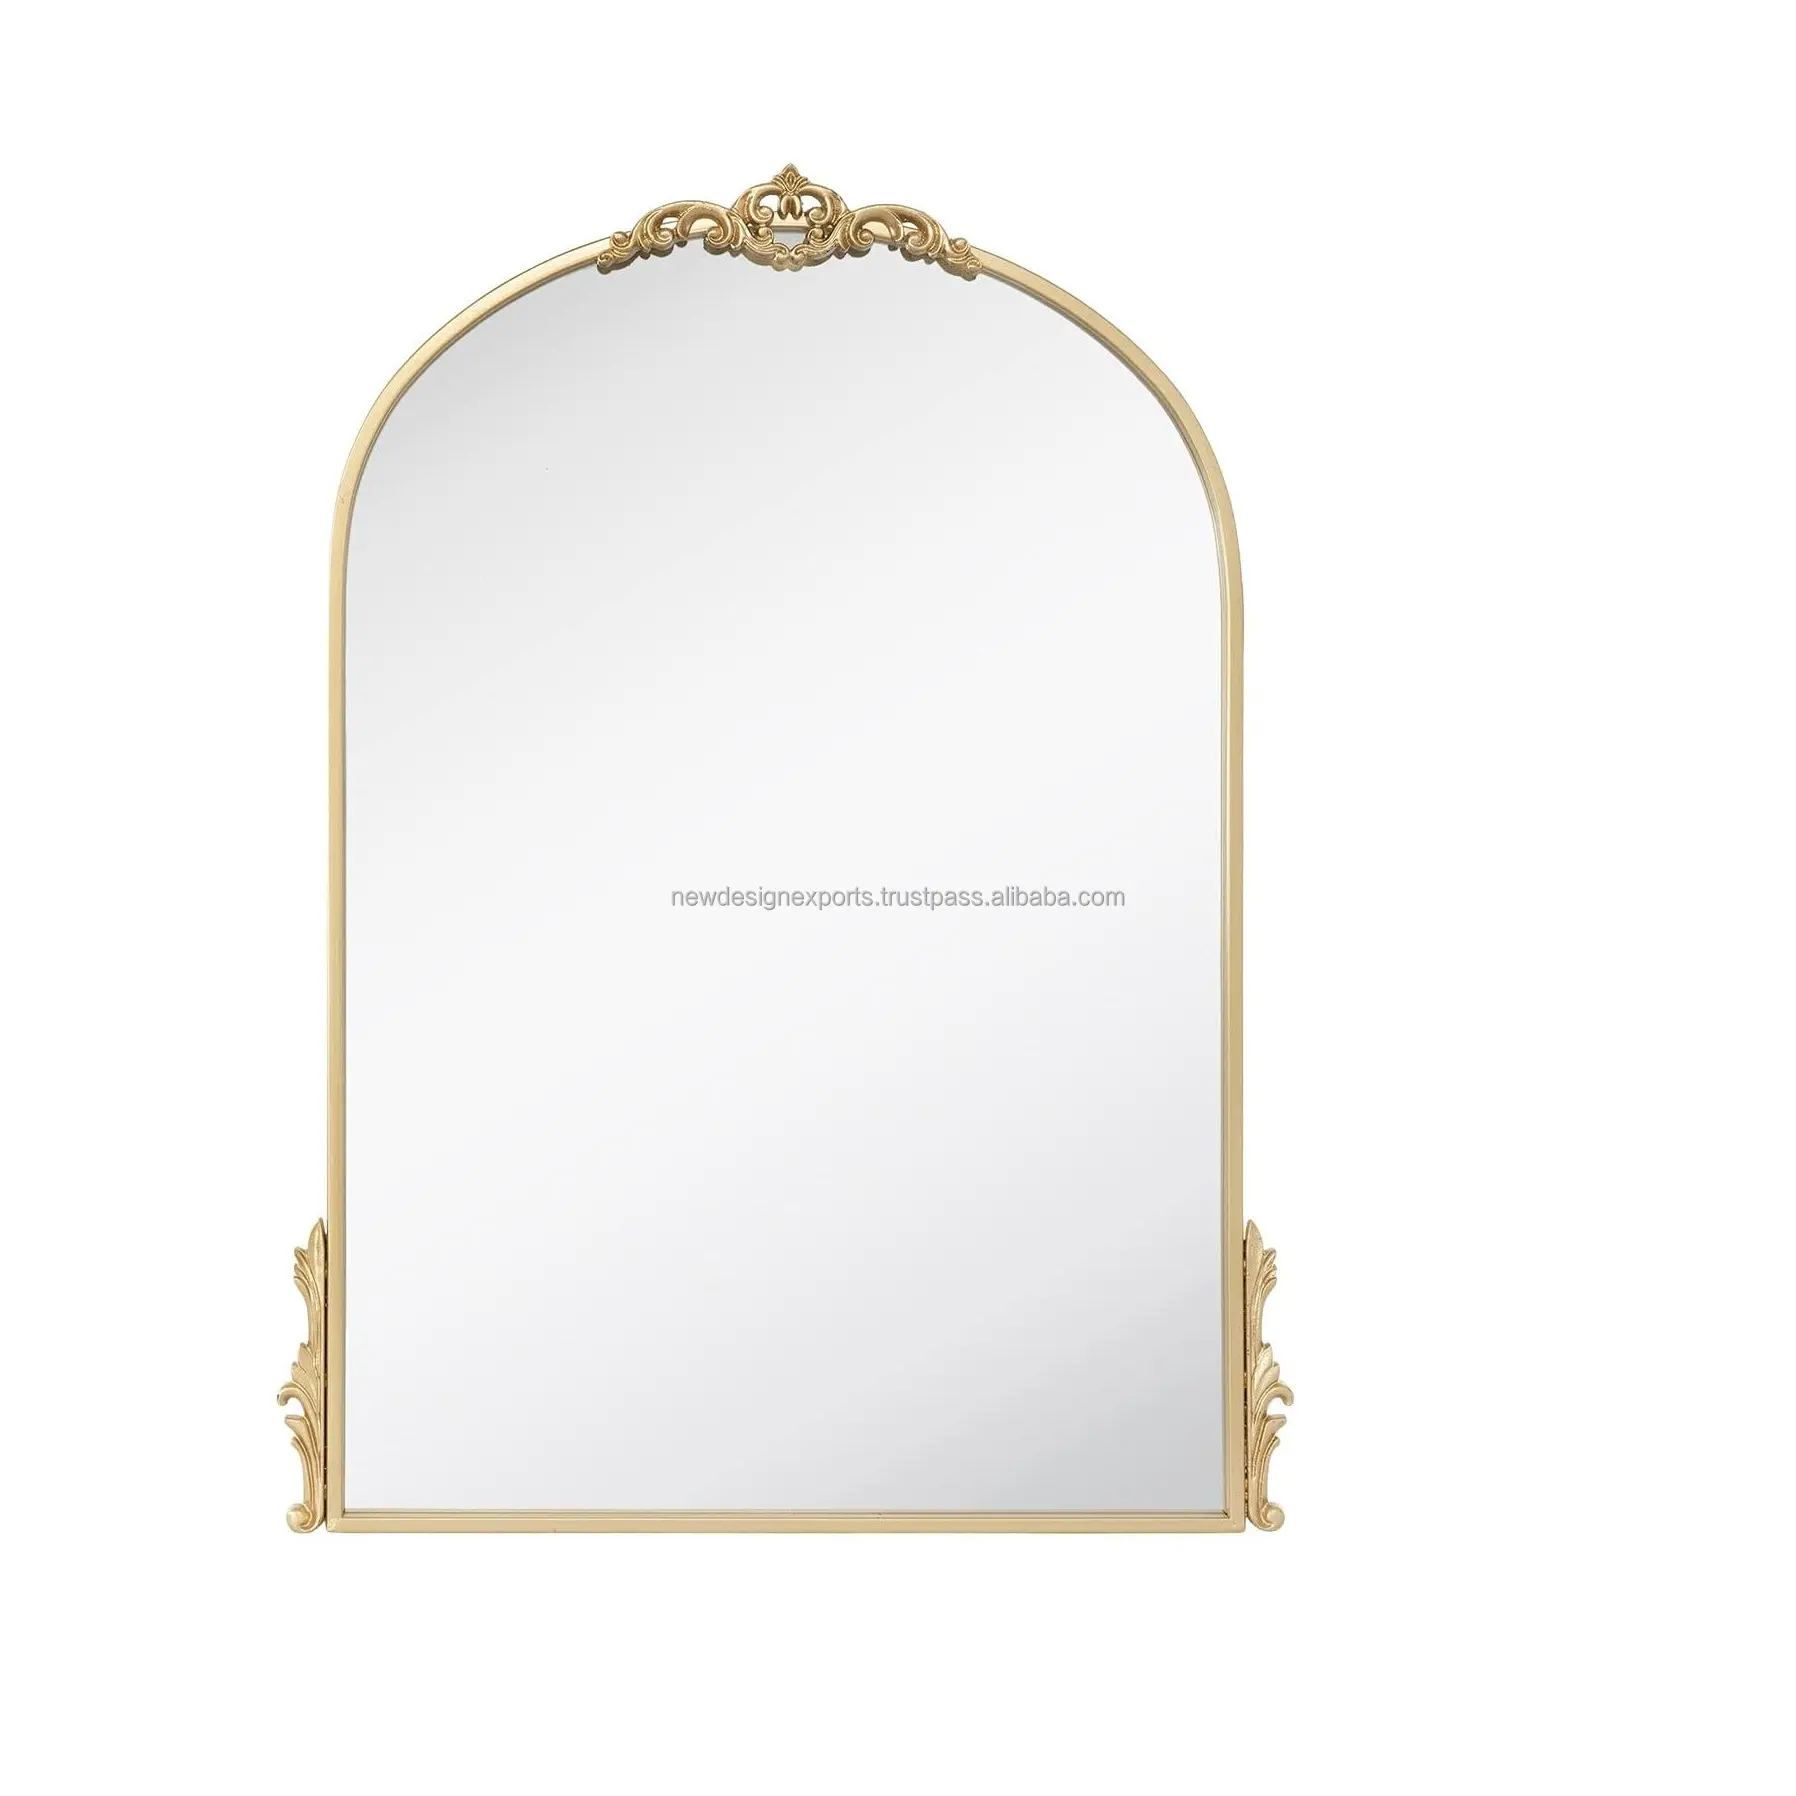 Espejo de pared tallado para decoración del hogar, arco dorado elegante y floreciente para tocadores, salas de estar, eventos